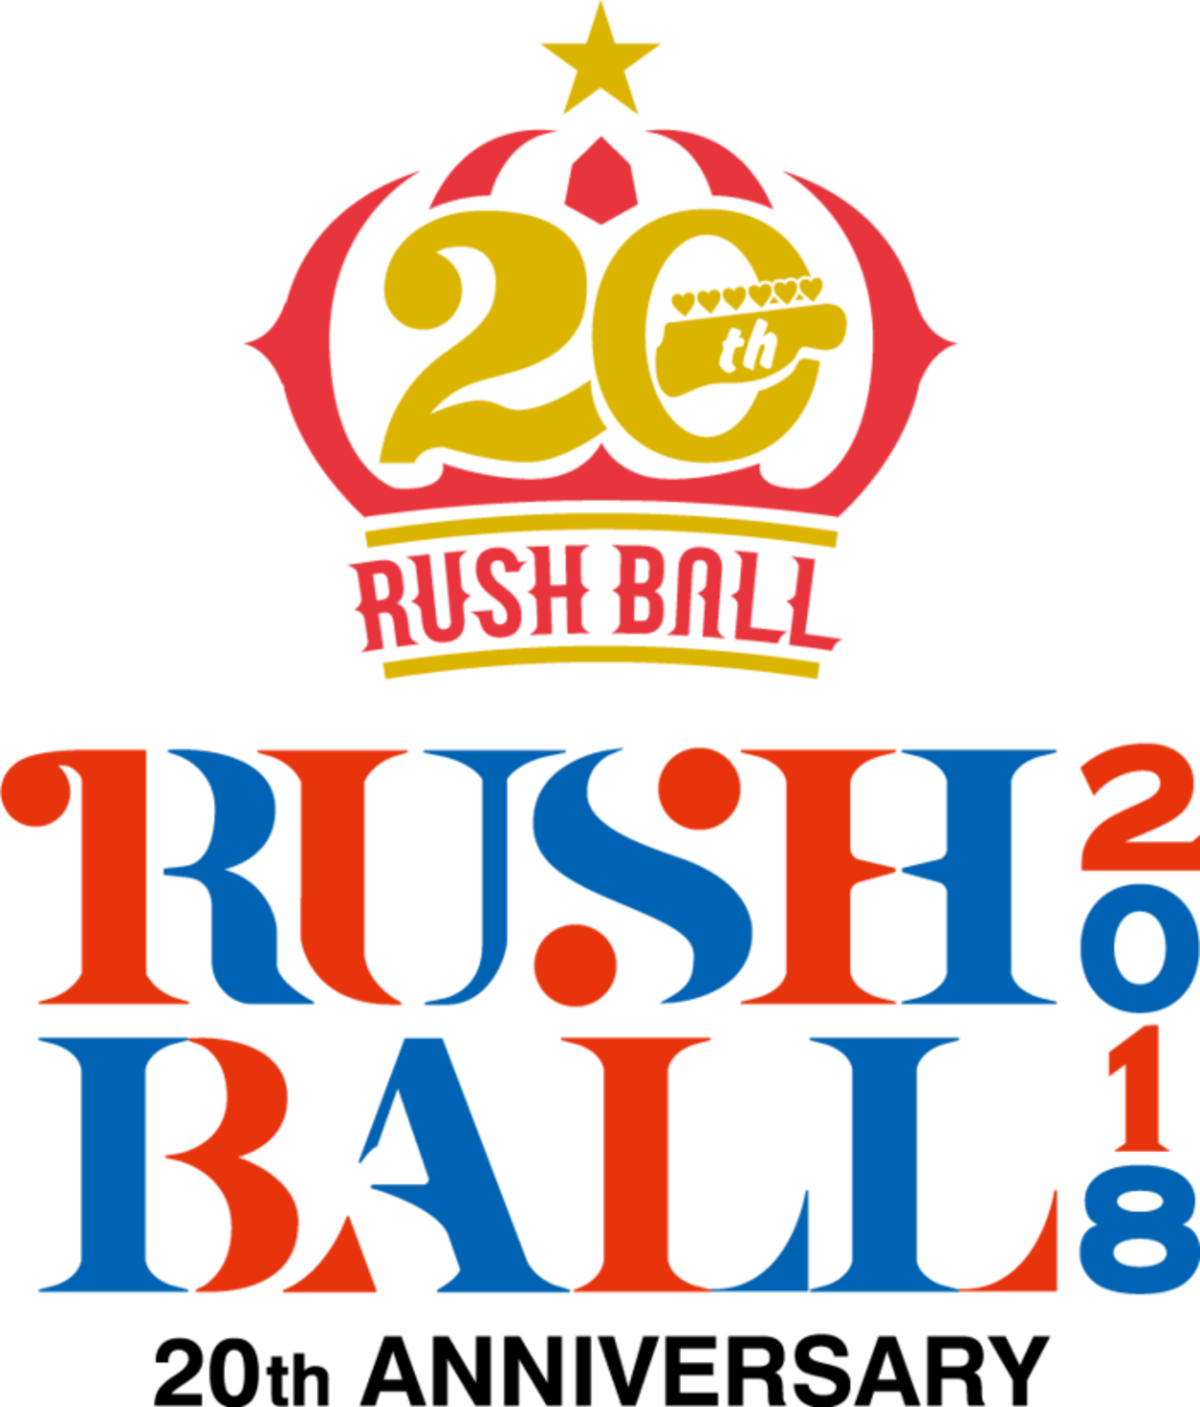 初の3デイズ開催の Rush Ball 18 第2弾出演アーティストに9mm テナー クリープ フレデリック Bigmama Acidman バンアパ ポルカら決定 日割り発表も